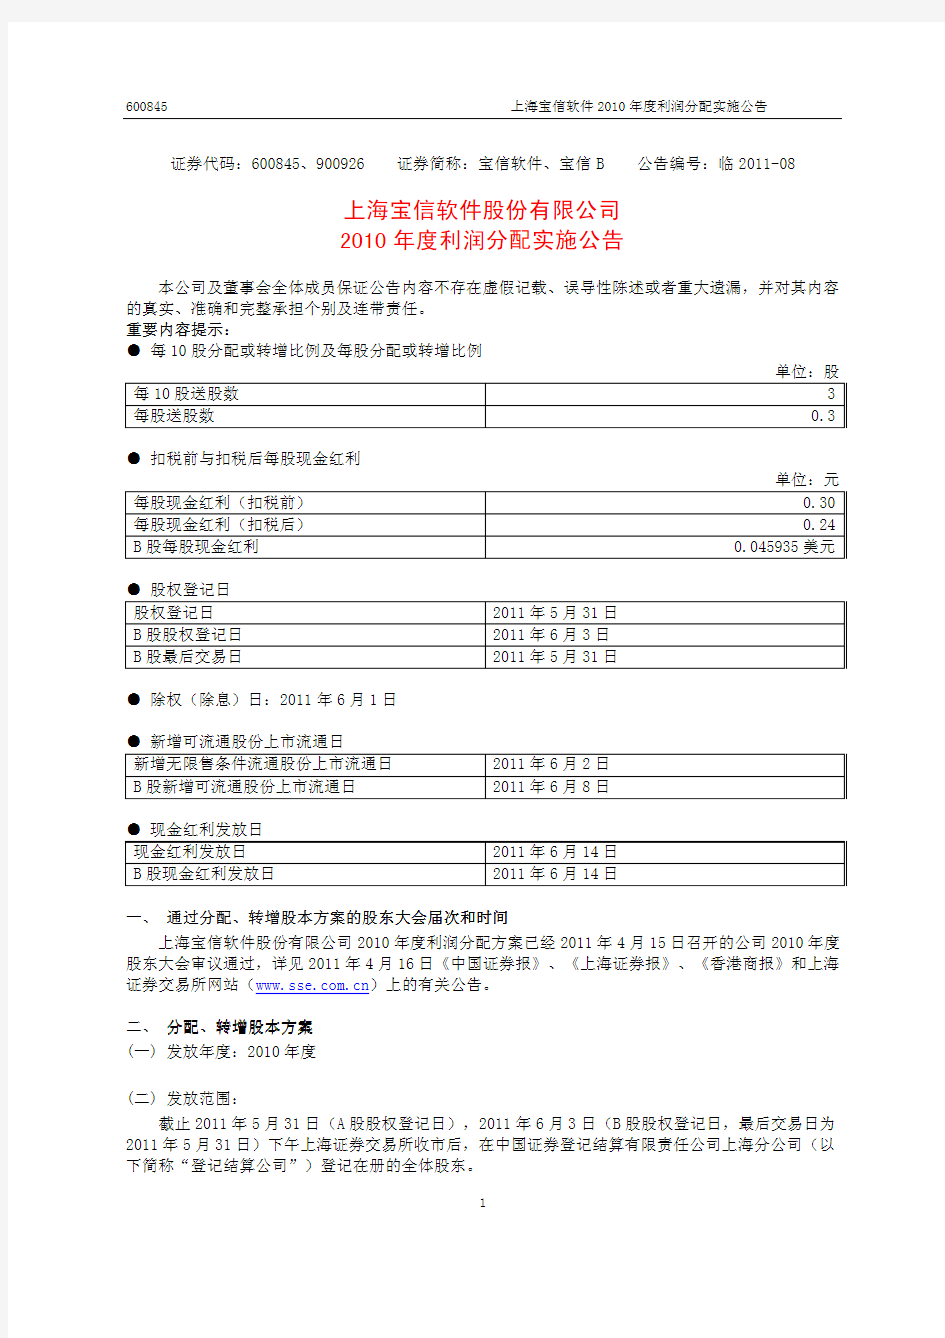 上海宝信软件股份有限公司 上海宝信软件股份有限公司